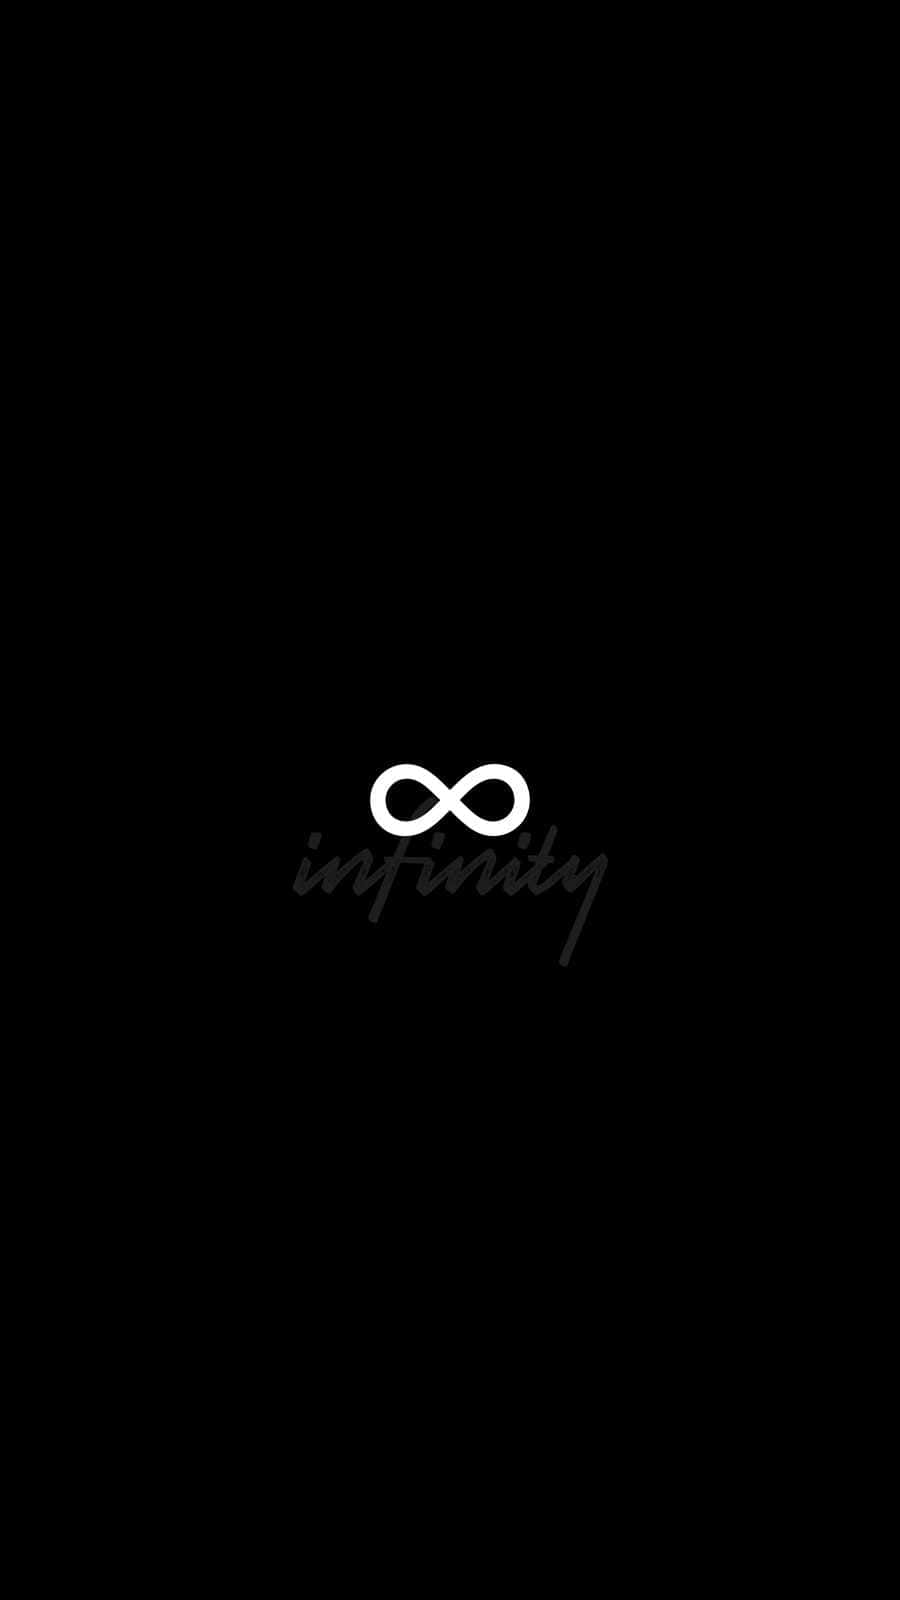 Black Infinity